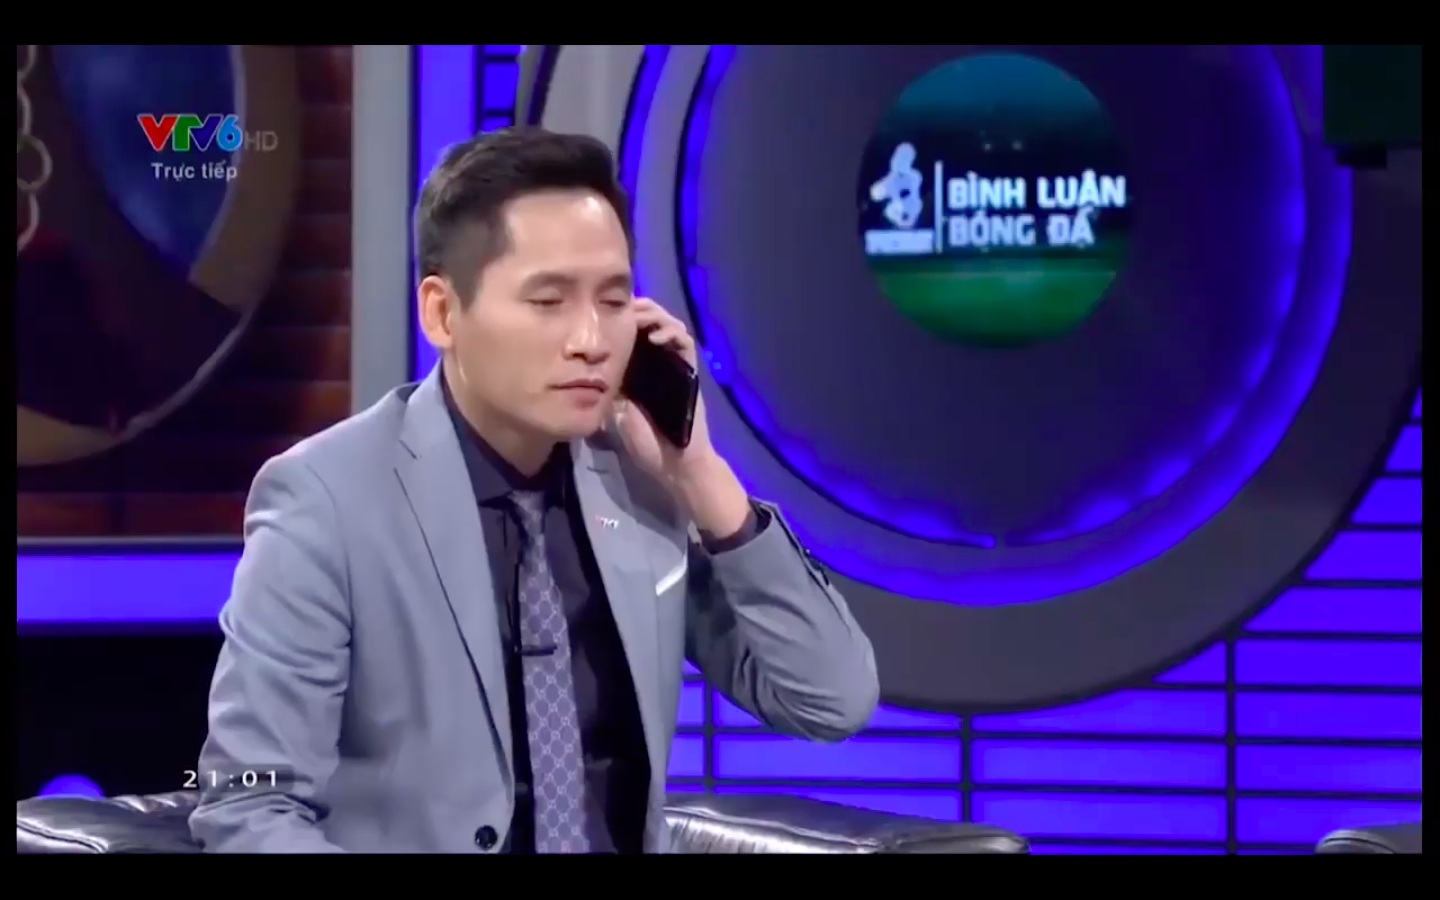 Video BTV Quốc Khánh giả vờ gọi điện Văn Lâm "đá xoáy" thủ môn Bùi Tiến Dũng trên sóng truyền hình quốc gia